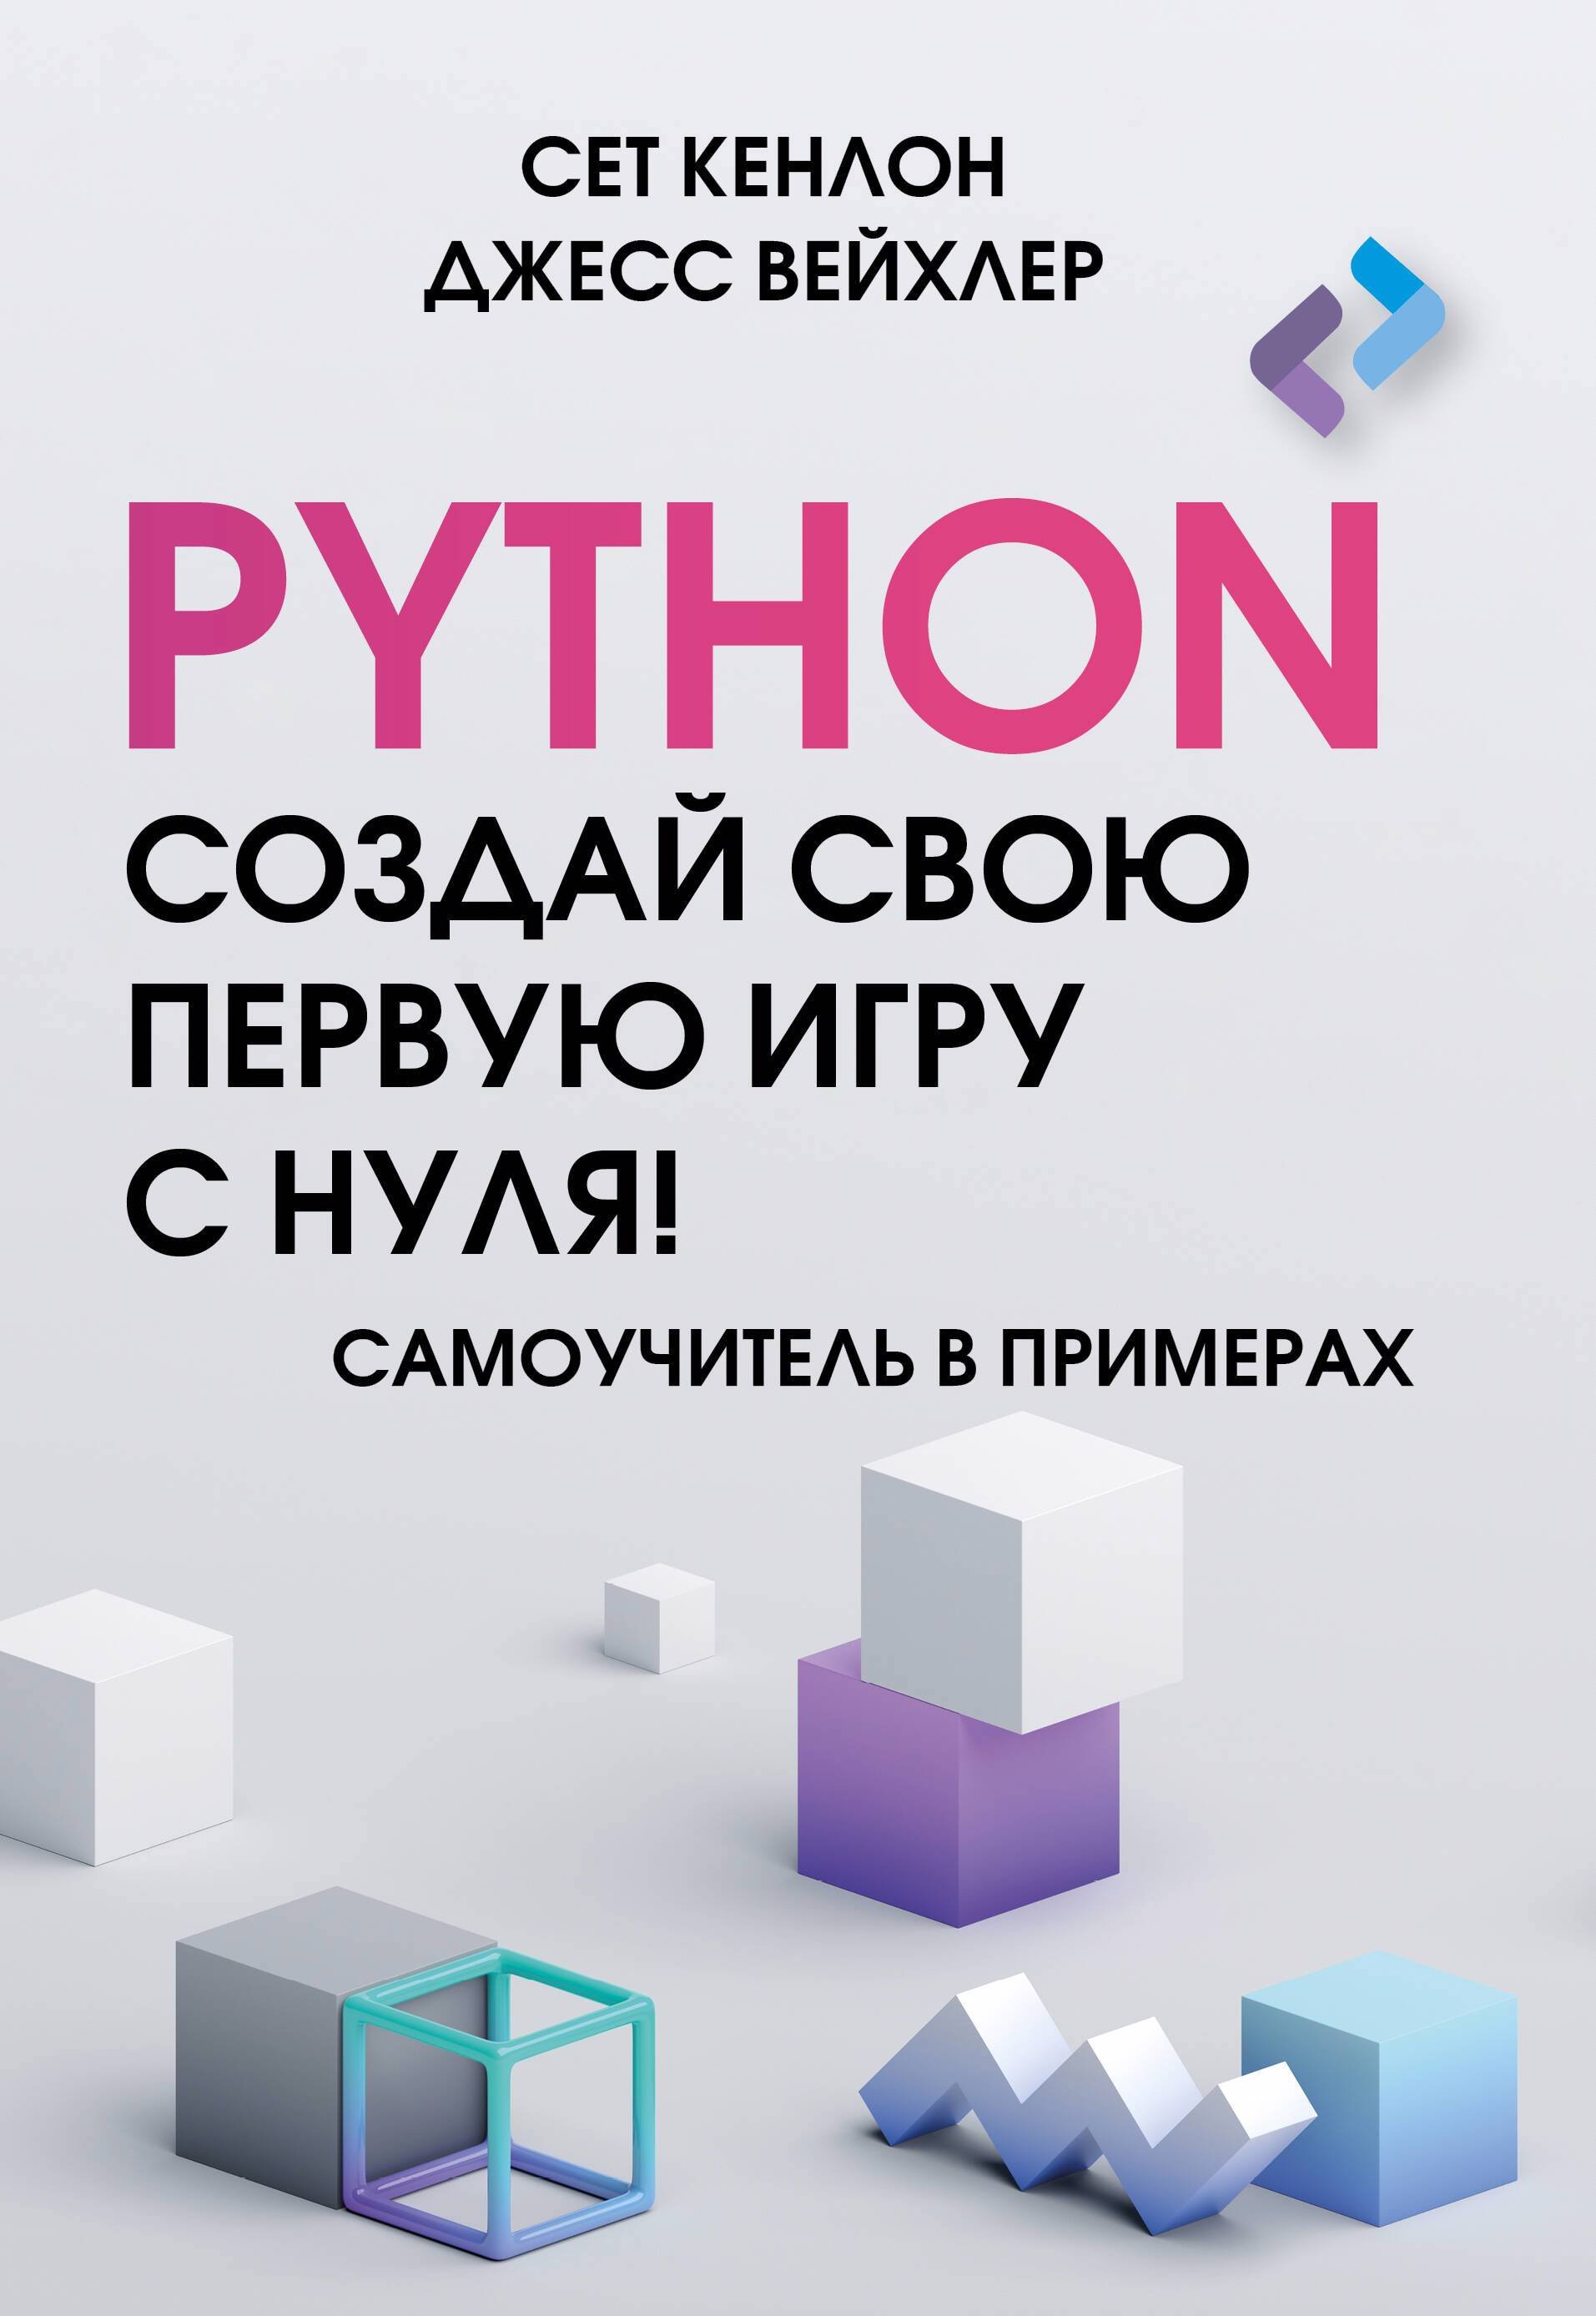      Python  !   